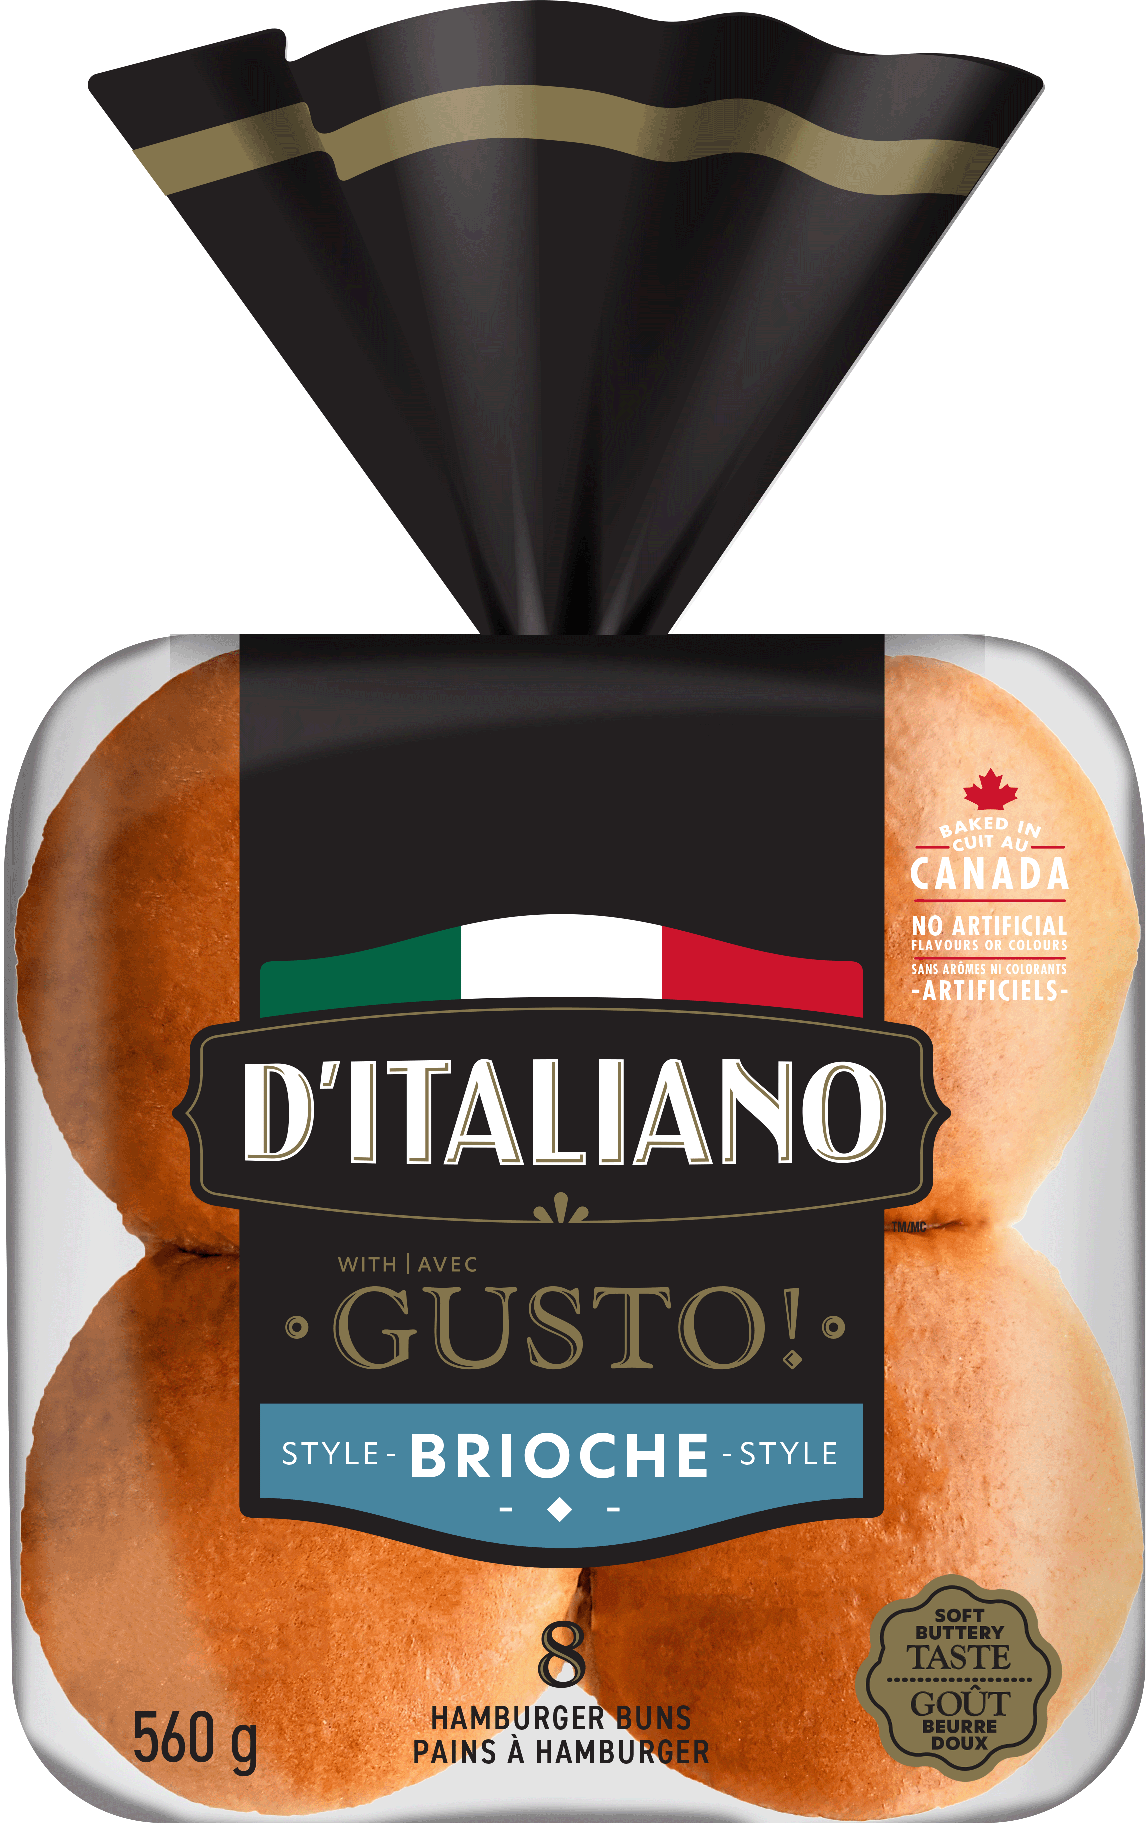 Petits pains crustini style brioche D’Italiano avec Gusto!